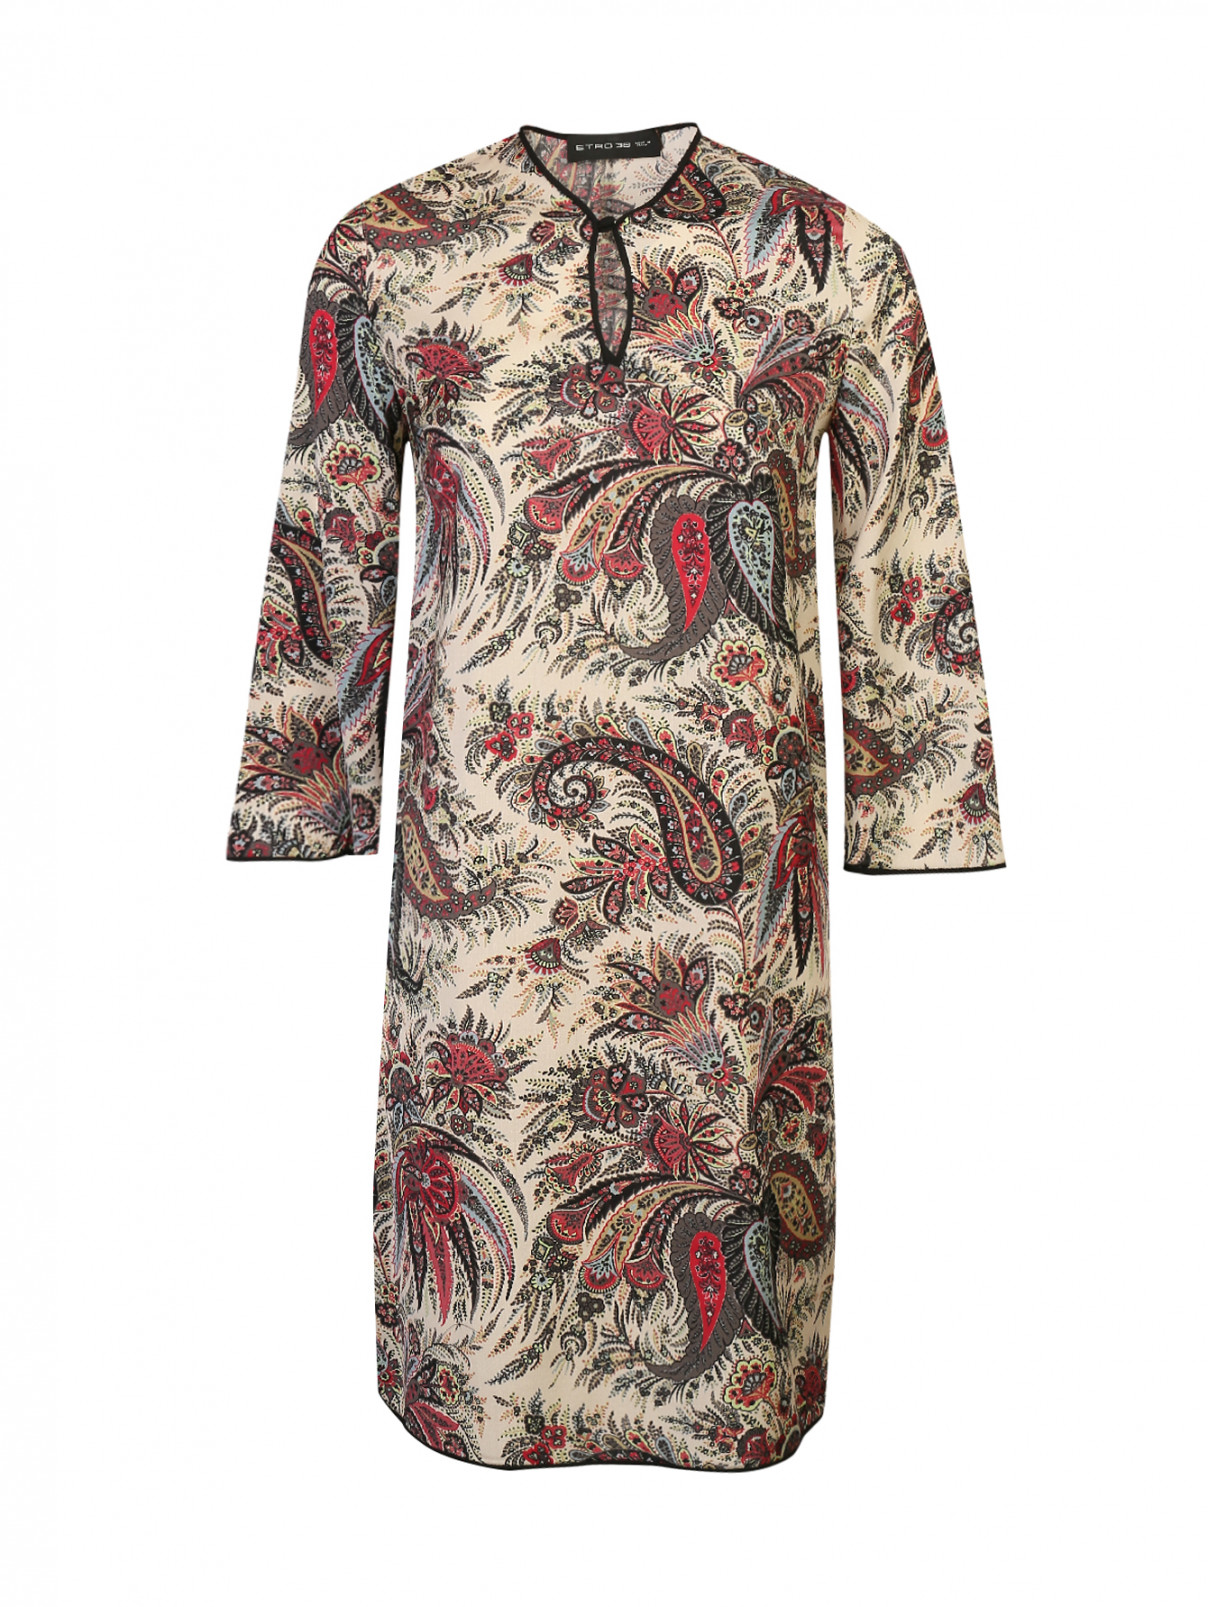 Платье шерстяное с узором пейсли Etro  –  Общий вид  – Цвет:  Узор